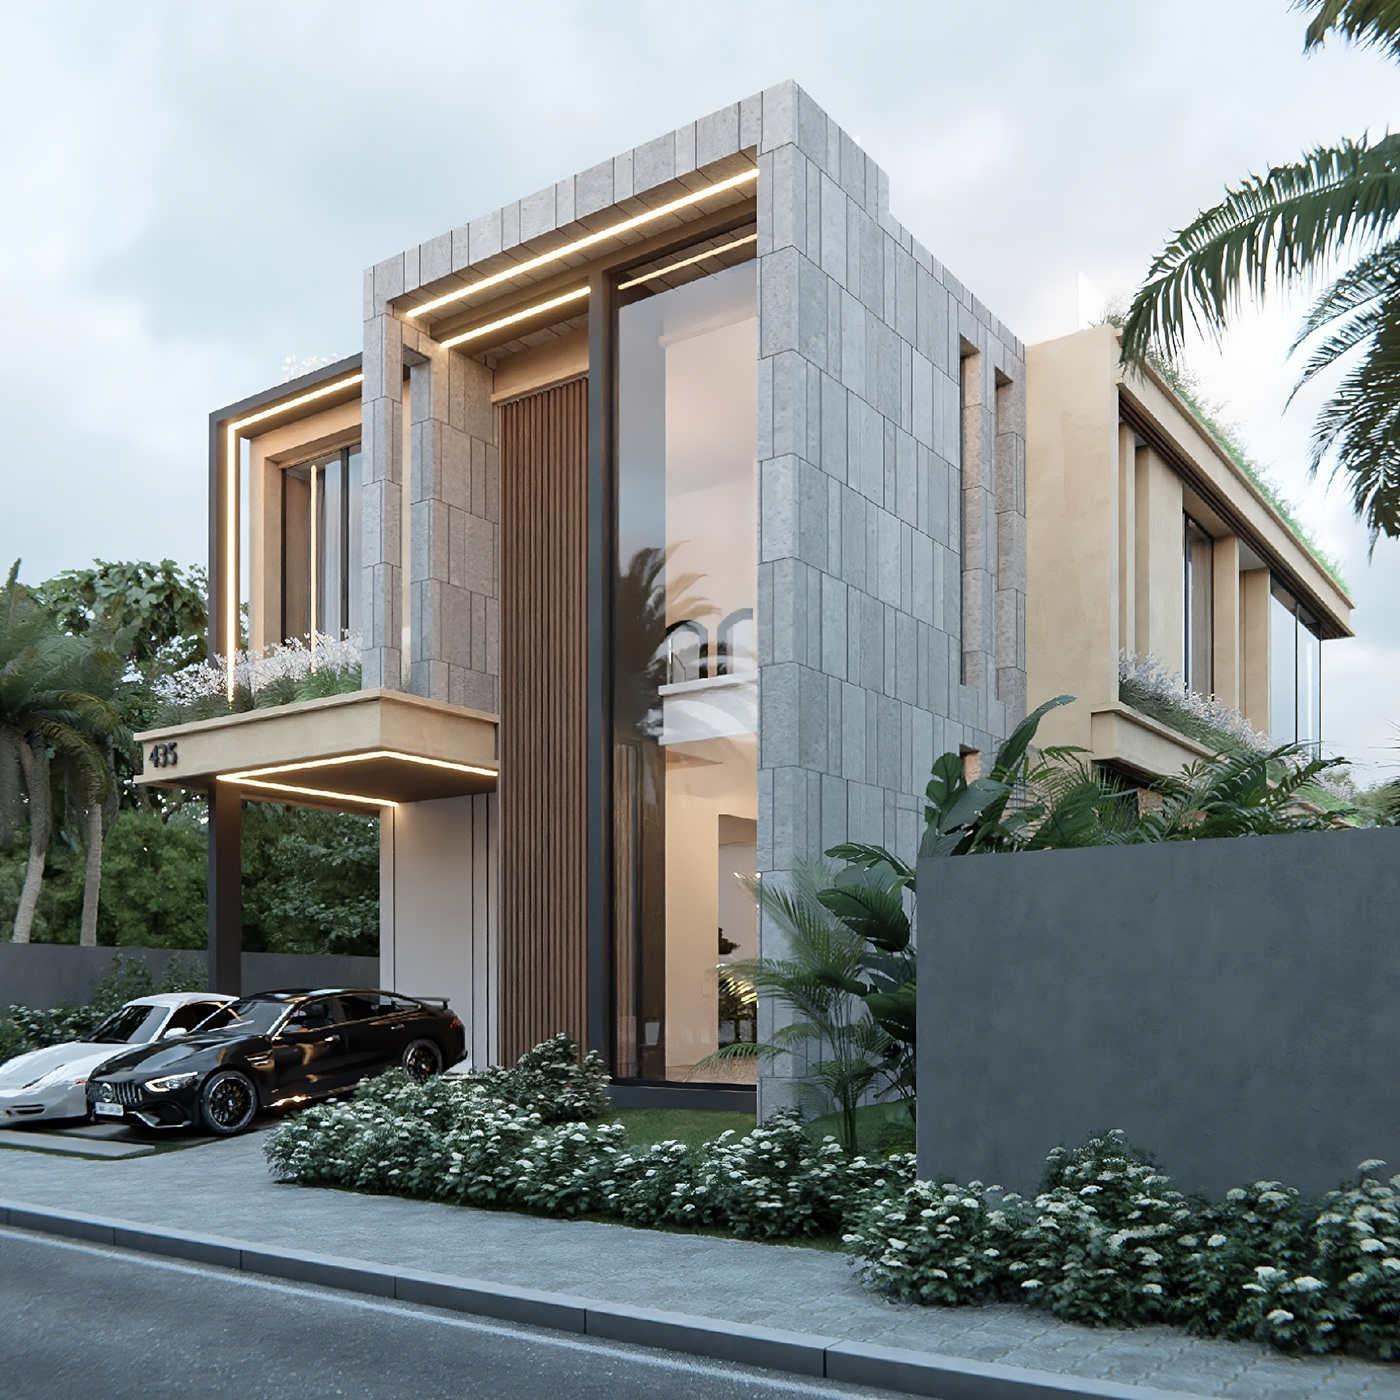 Villa architecture visualization Render interior design  archviz modern design 3D exterior